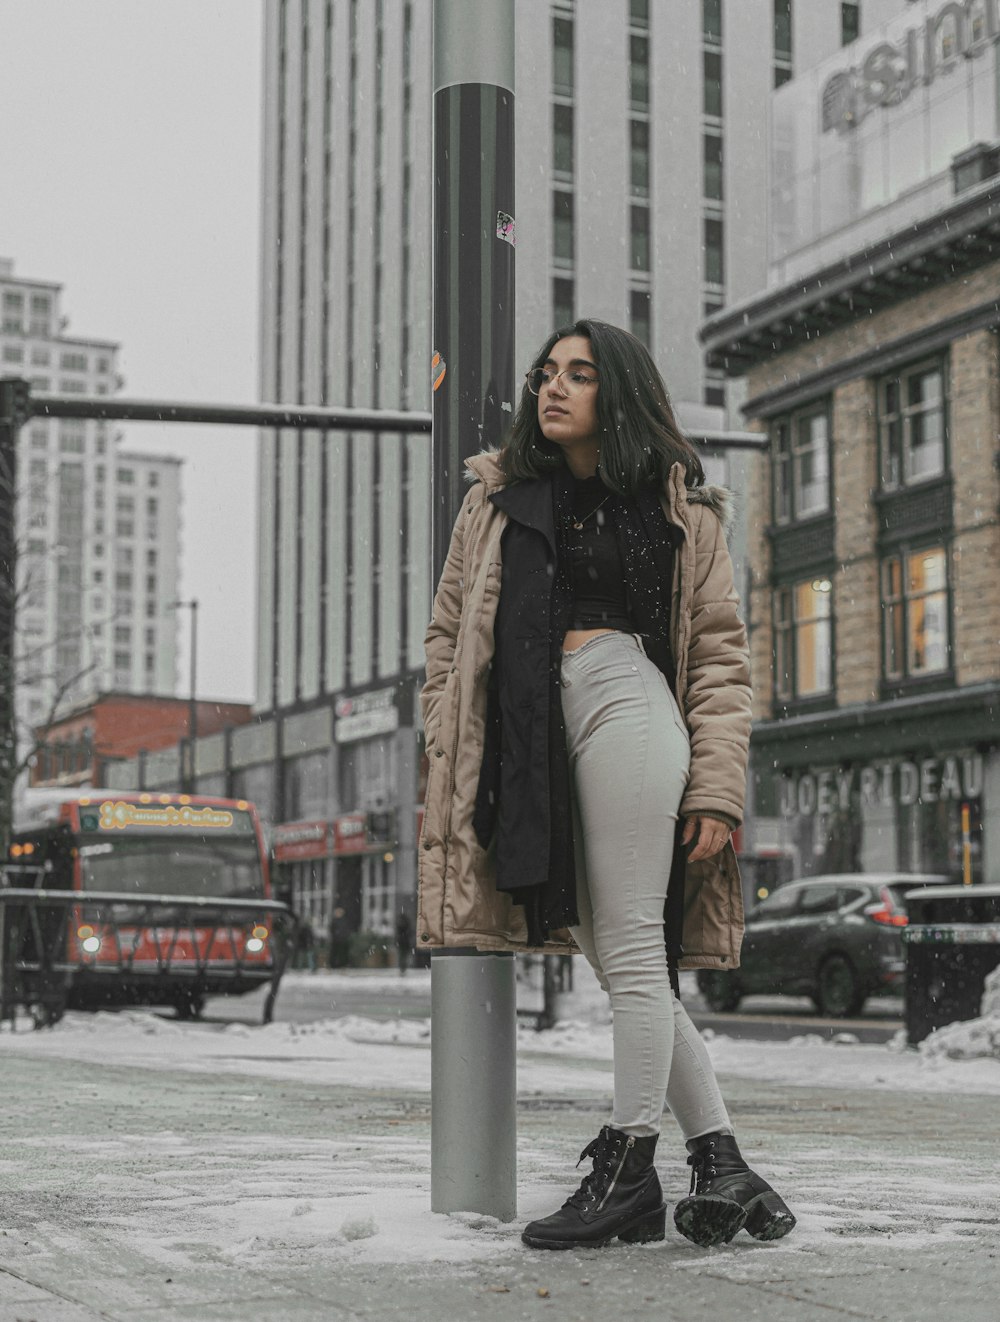 Una mujer parada junto a un poste en la nieve